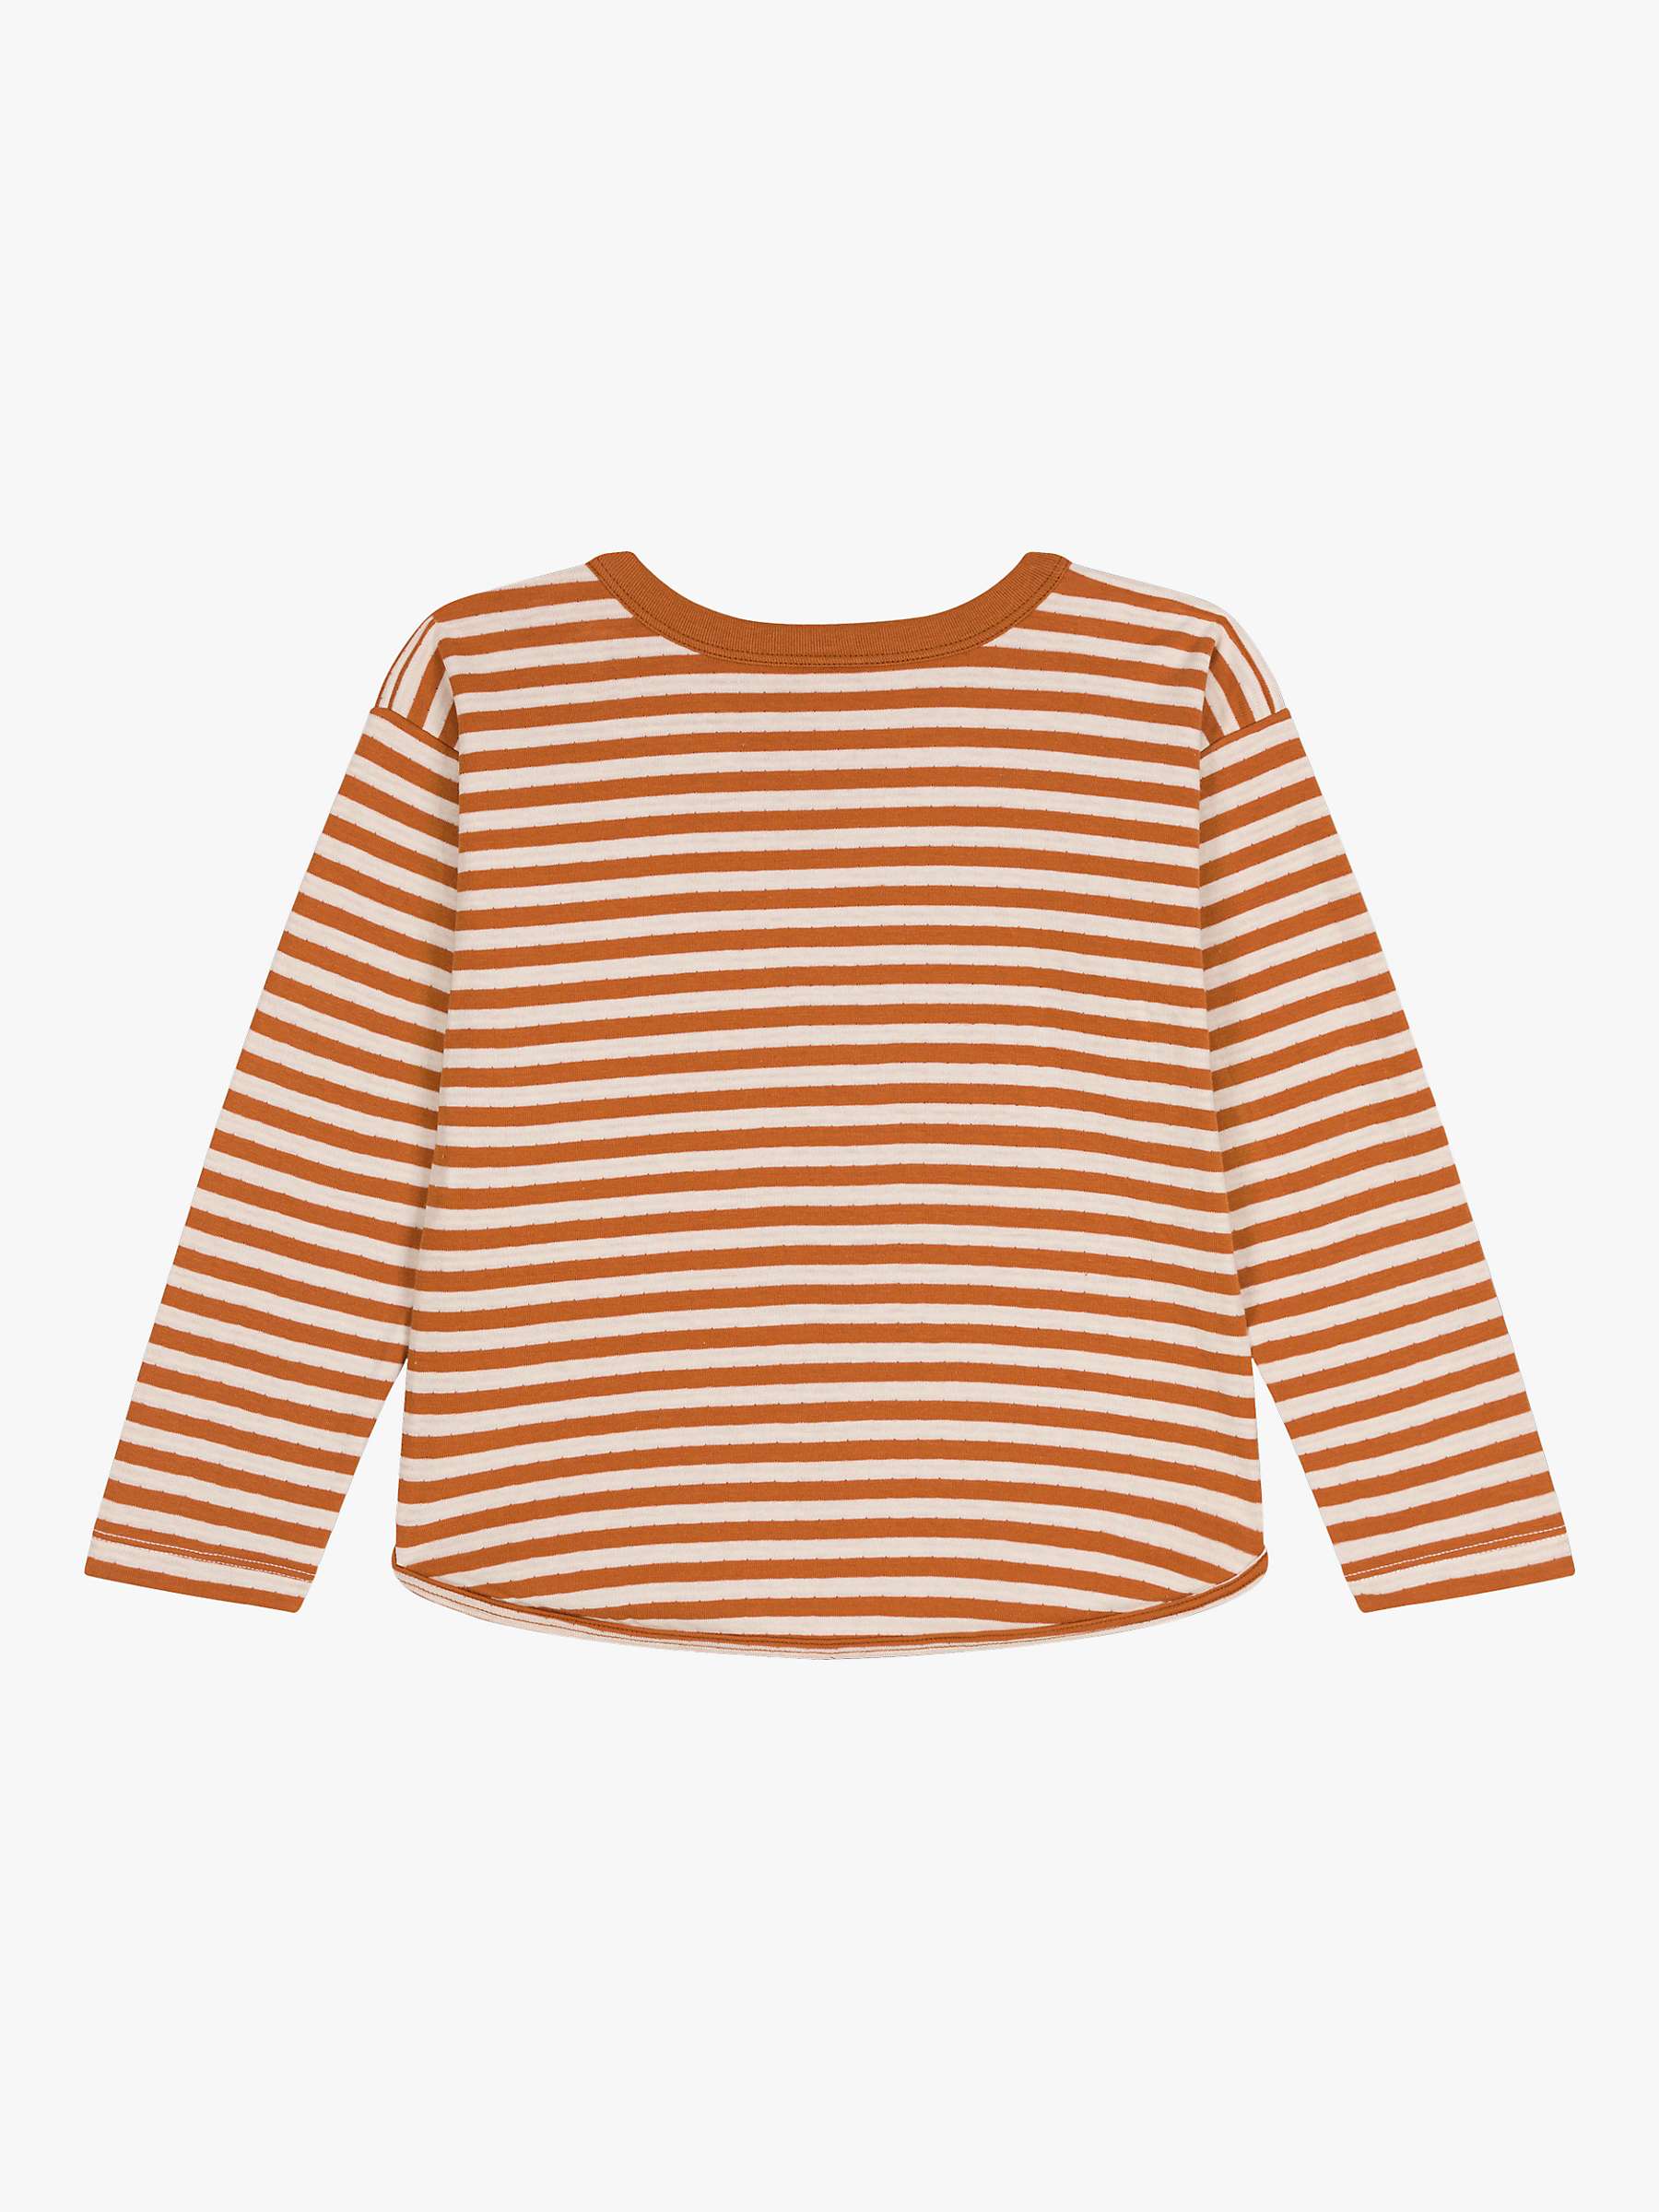 Buy Petit Bateau Kids' Stripy Long Sleeve T-Shirt, Ecureuil/Avalanche Online at johnlewis.com